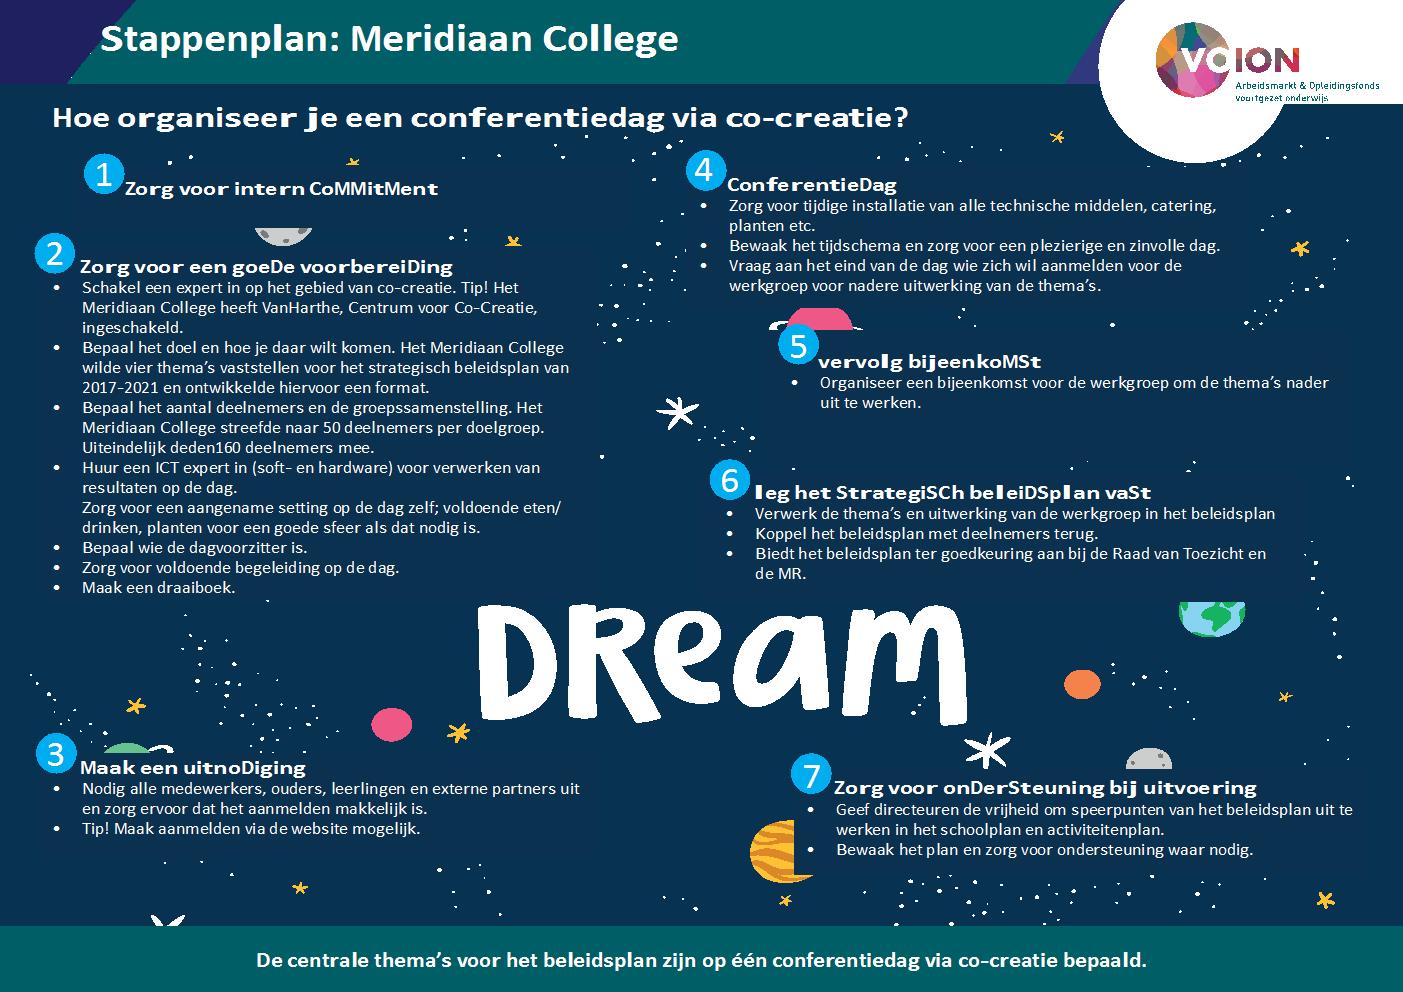 Stappenplan Meridiaan College - Hoe organiseer je een conferentiedag over een strategisch plan via co-creatie?